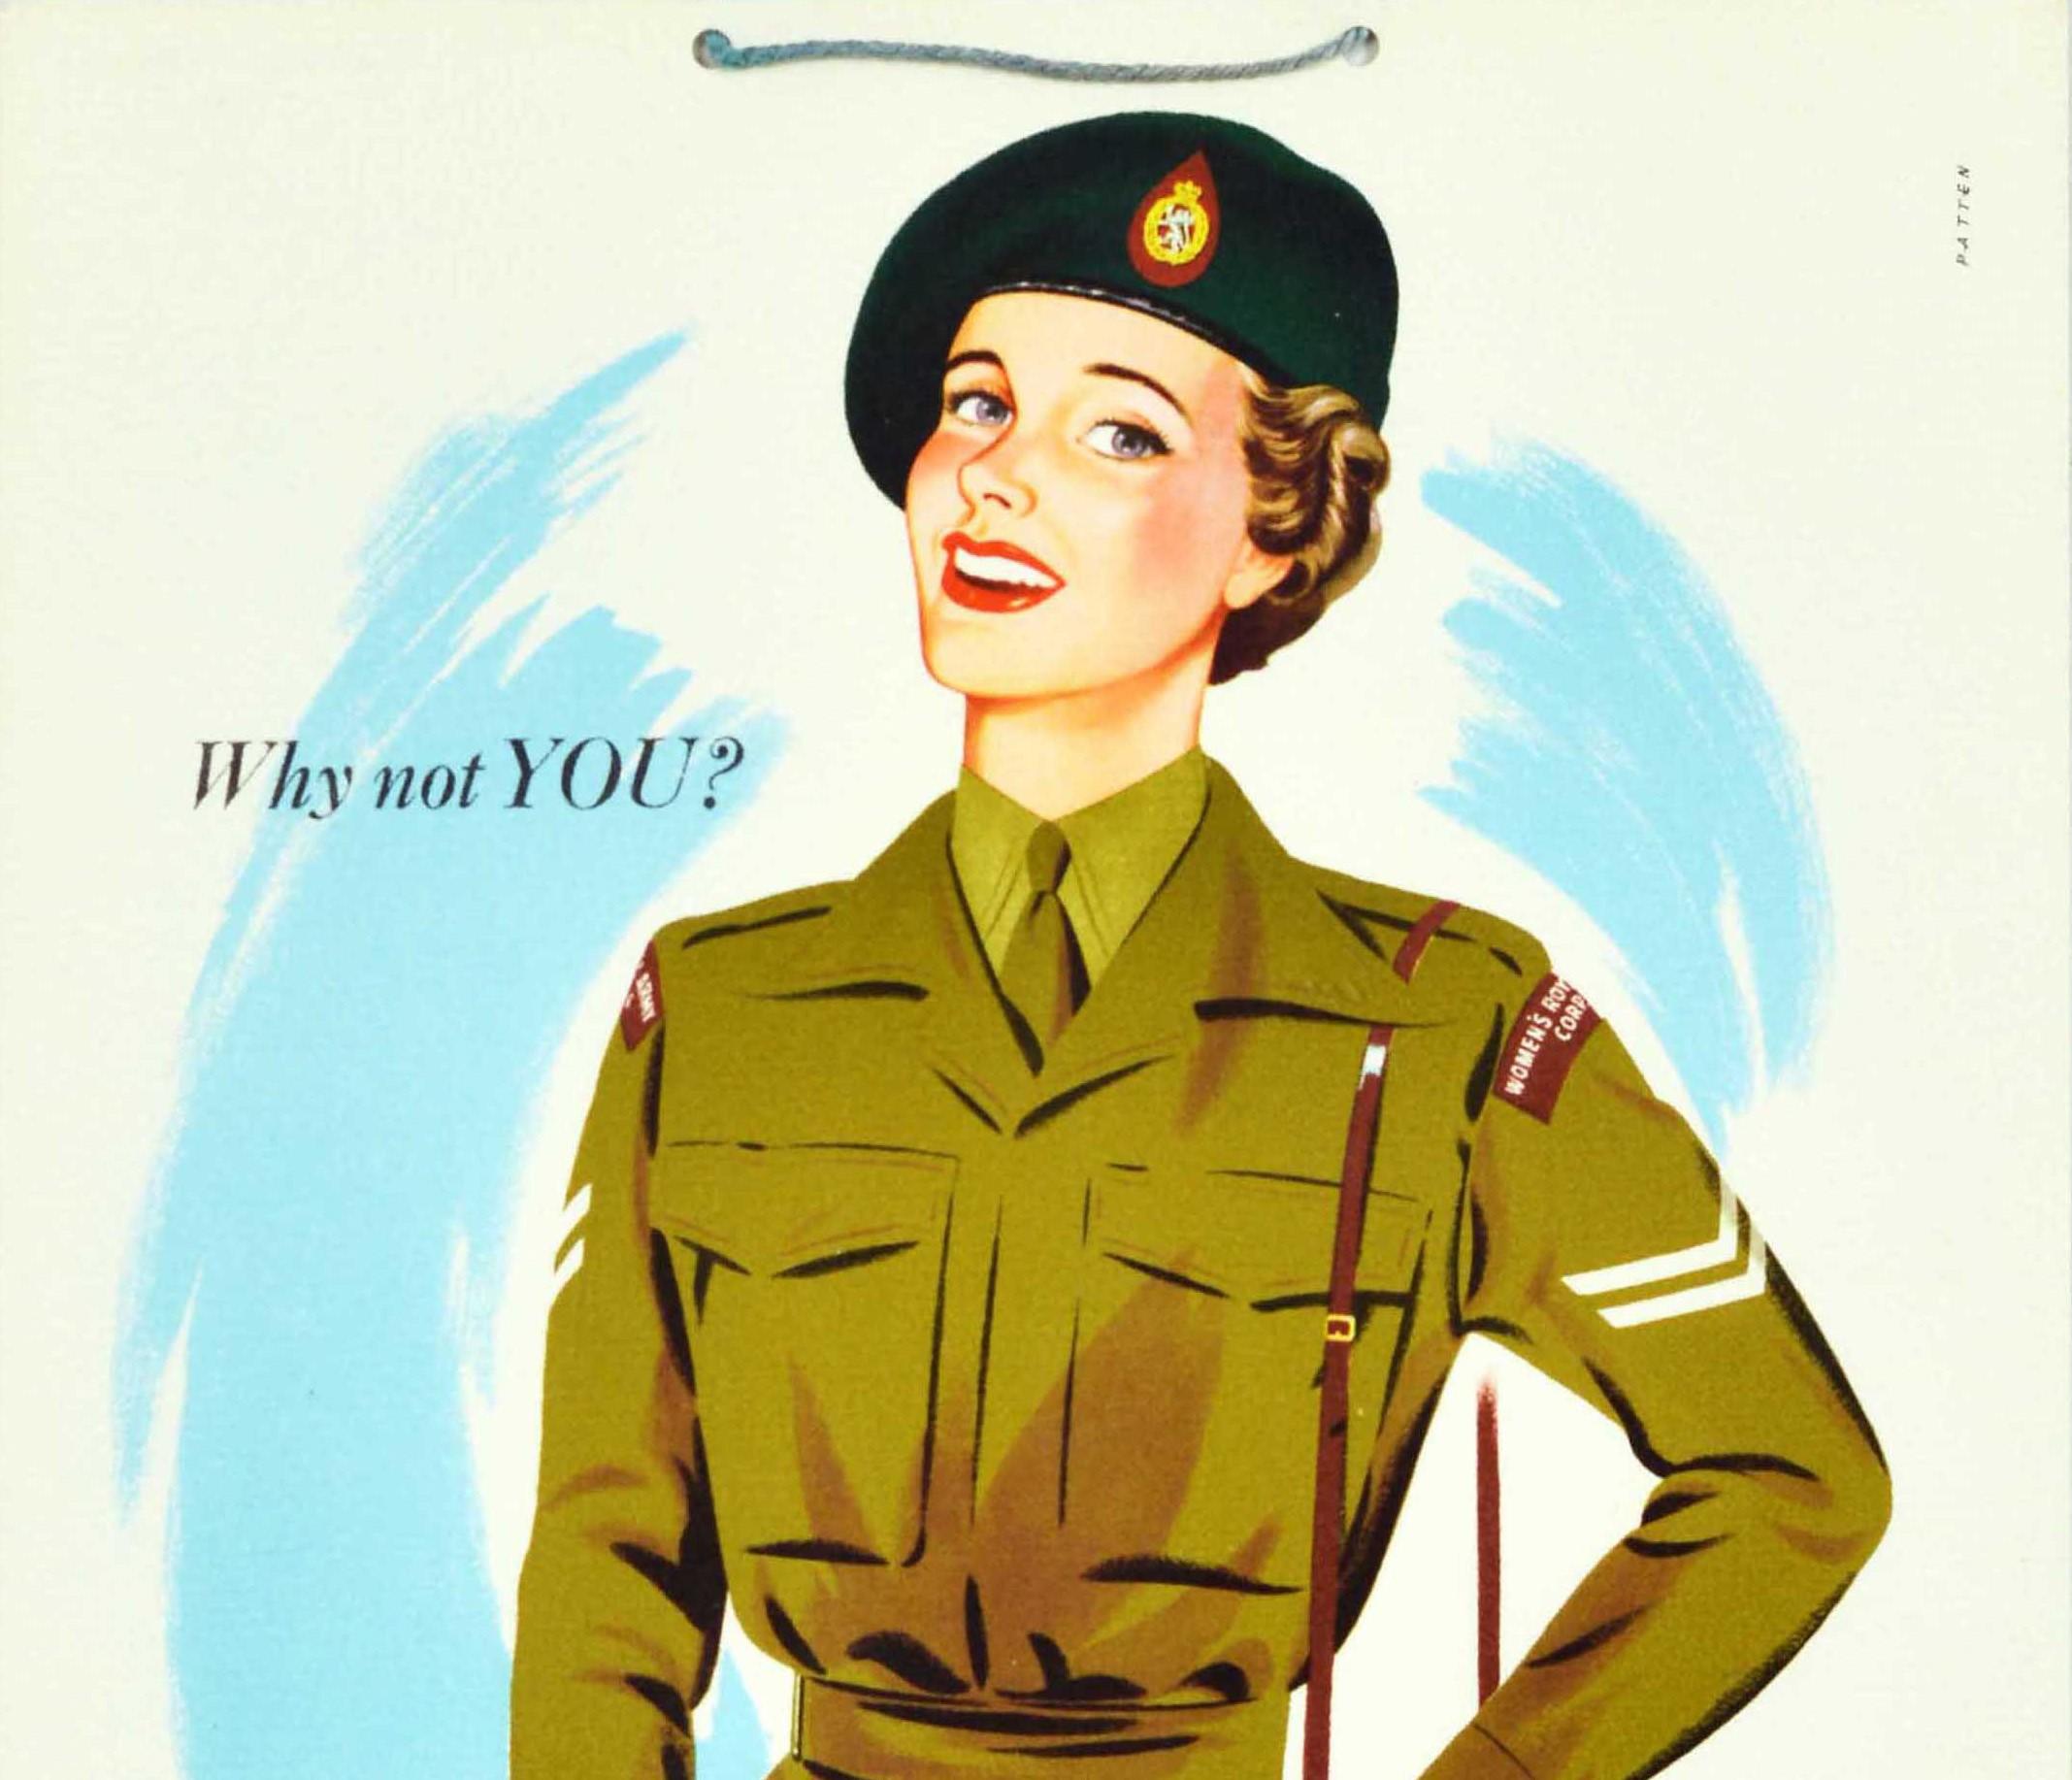 Originales britisches Militärrekrutierungsplakat für das Women's Royal Army Corps (1949-1992) Territorial Army - Why not You? Treten Sie dem WRAC (TA) bei und machen Sie Ihre Freizeit lohnenswert - mit einer jungen Dame in Armeeuniform, die den